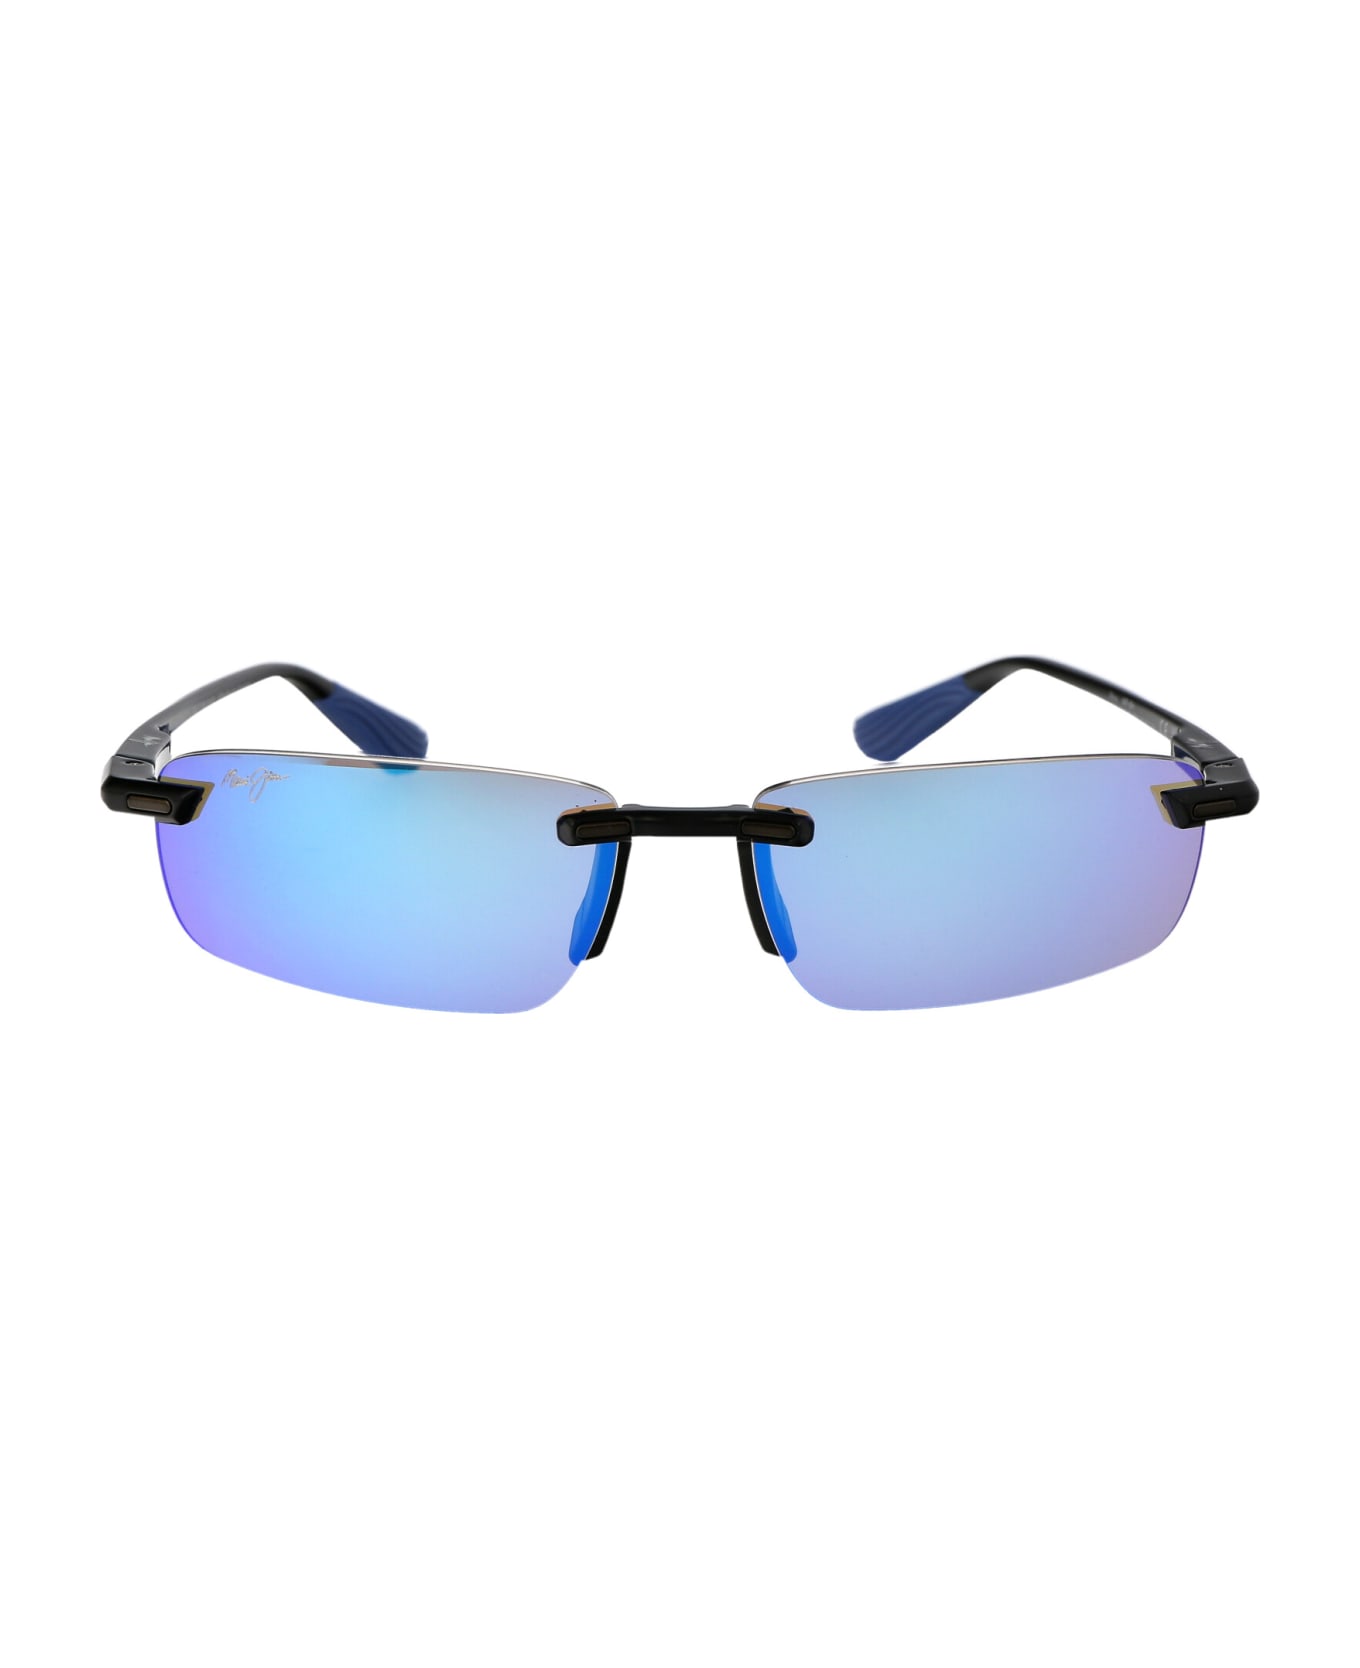 Maui Jim Ilikou Sunglasses - 02 BLUE HAWAII ILIKOU SHINY BLACK W/ BLUE サングラス